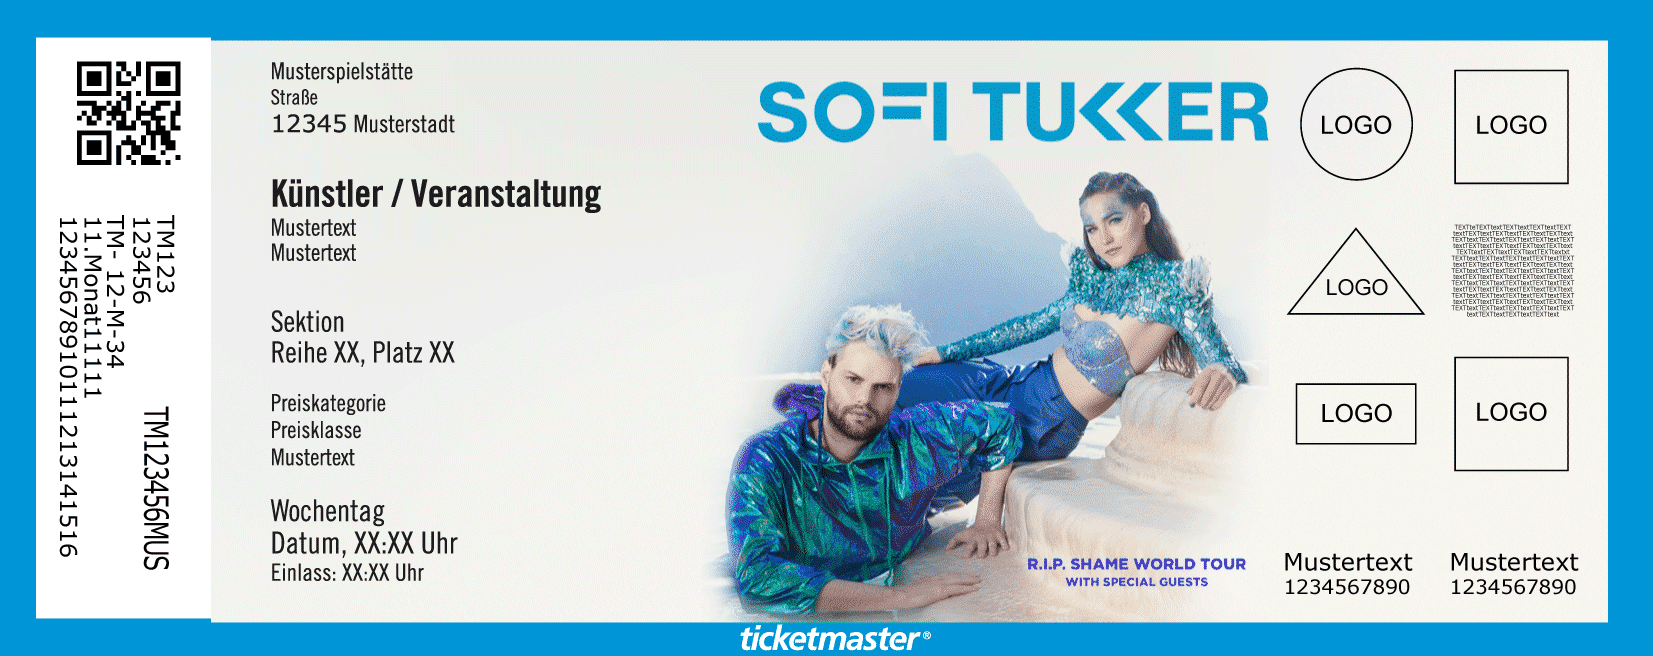 Sofi Tukker Deutschland Konzerte 2019